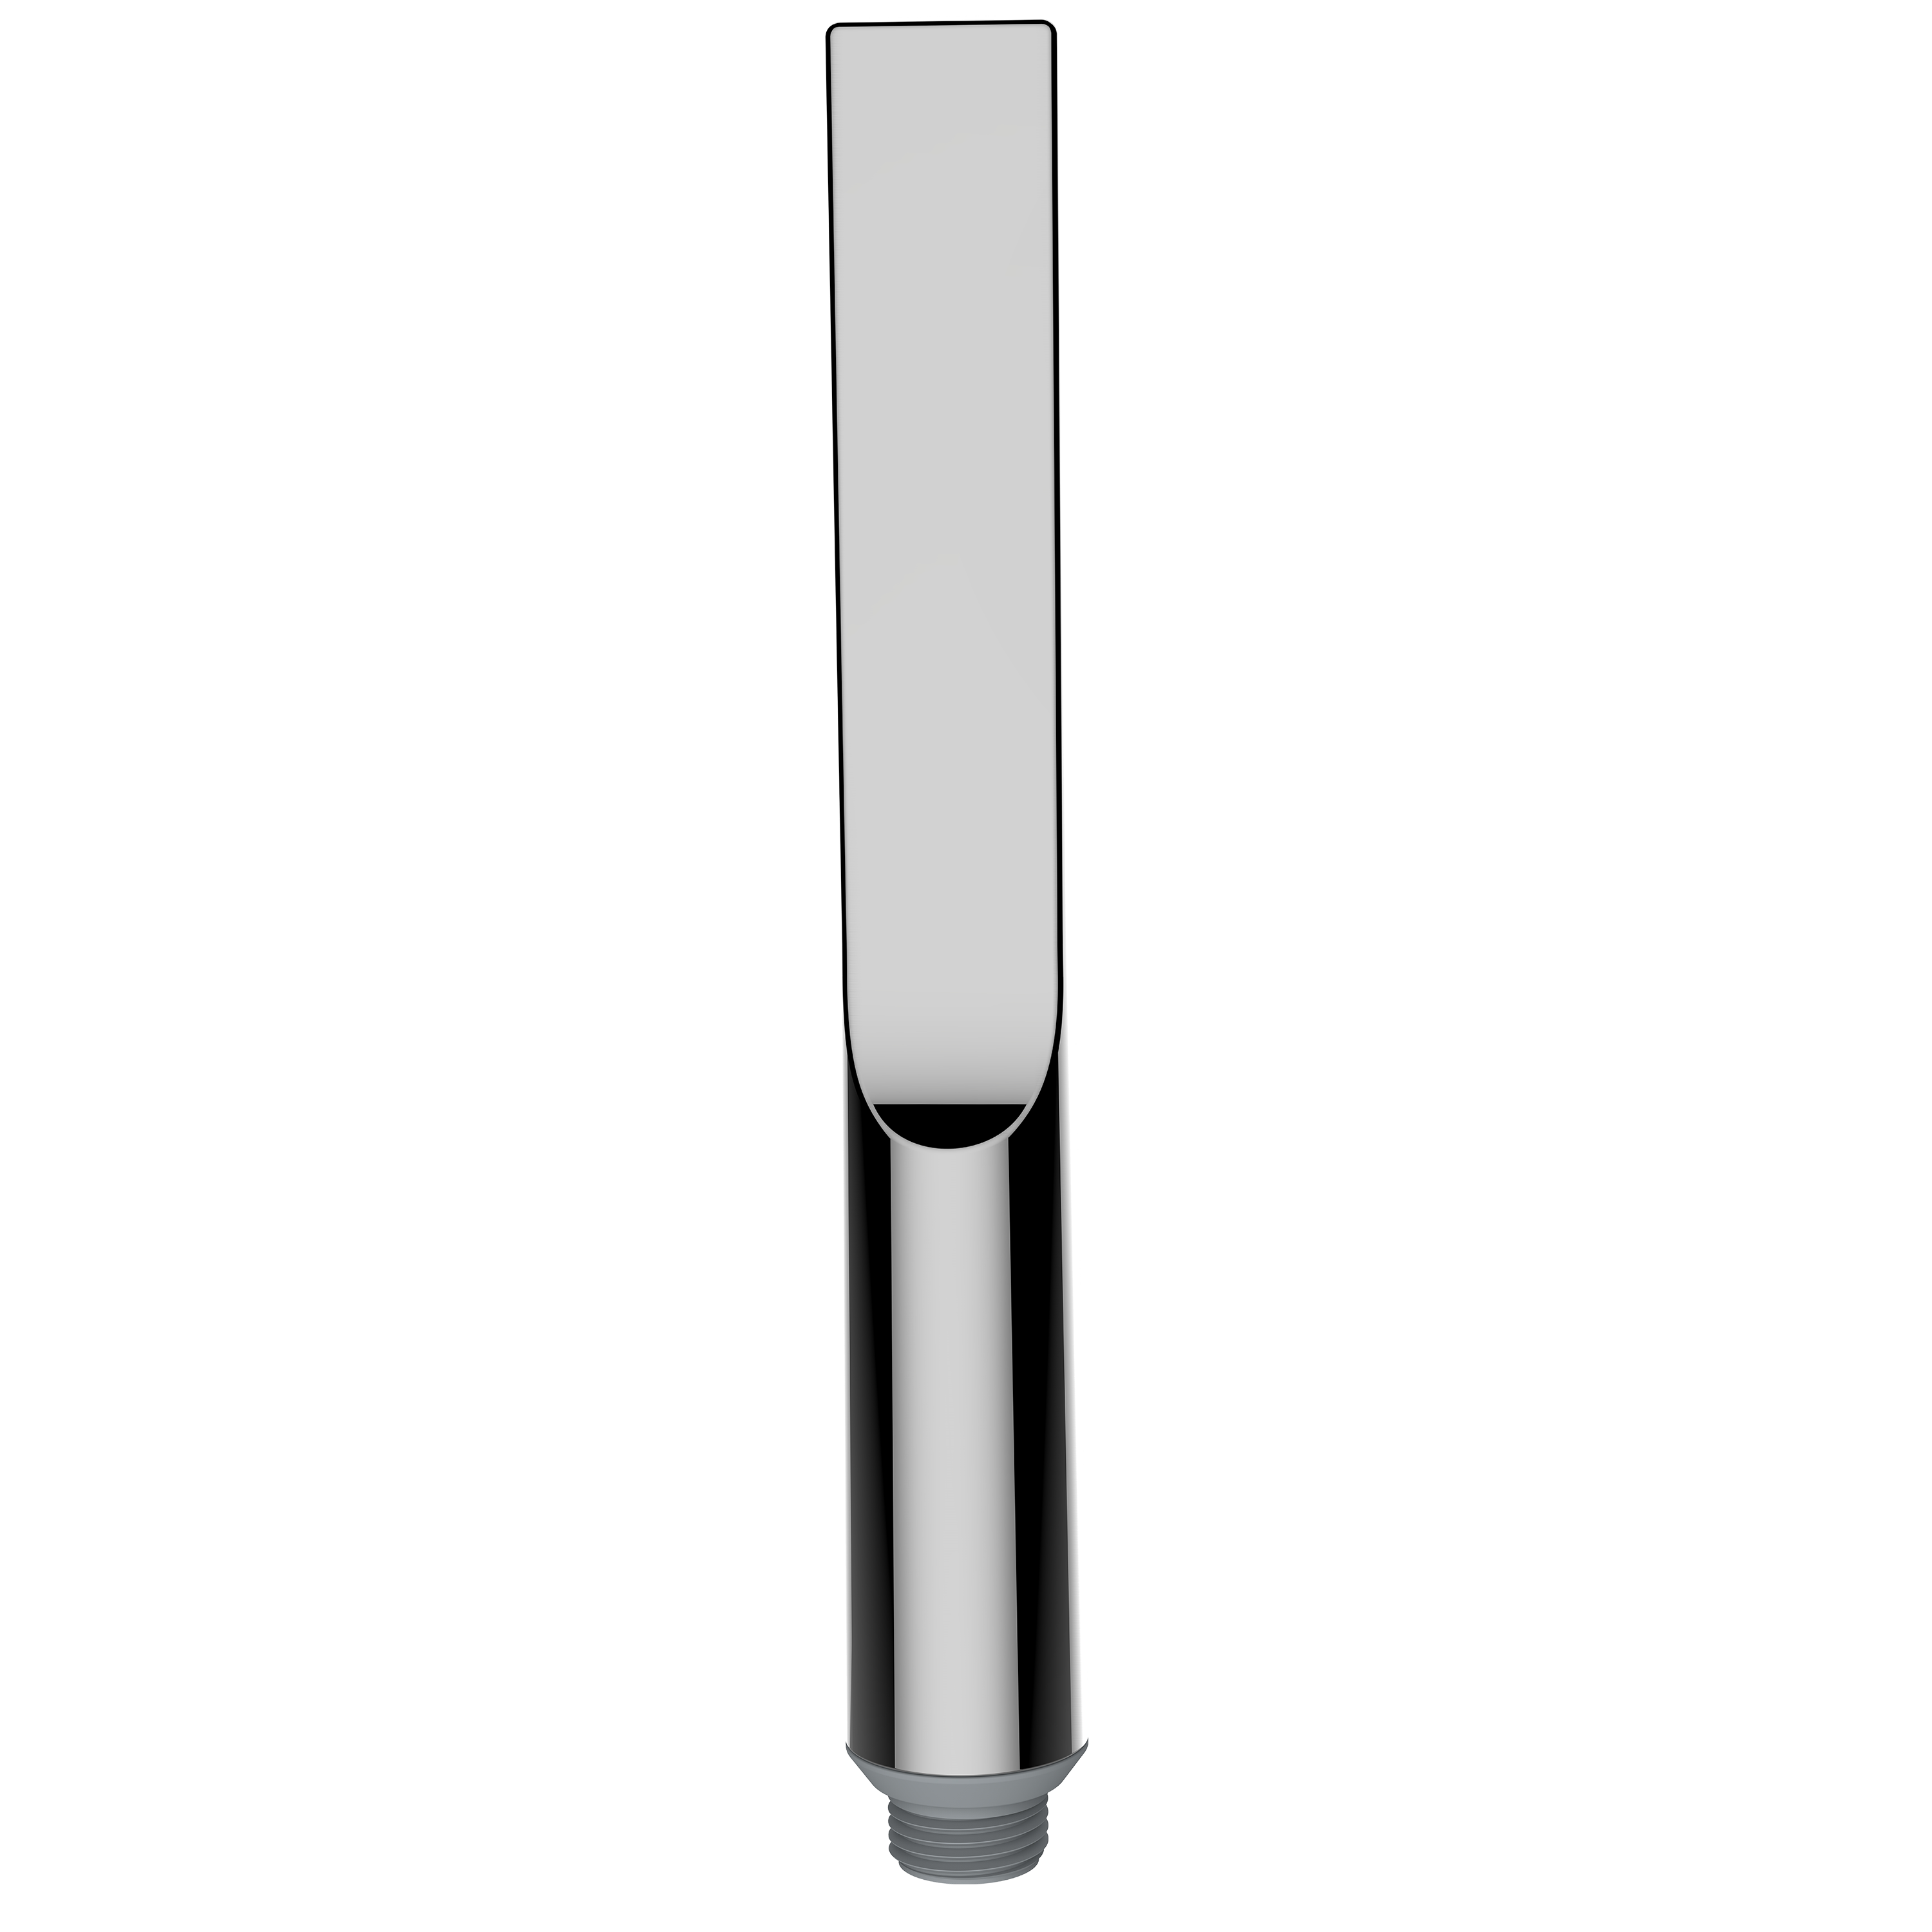 Наружная часть термостатического смесителя для душа BOSSINI Apice Z00523.094 на 2 потребителя, с ручным душем-палочкой, вентилями и шлангом, никель шлифованный